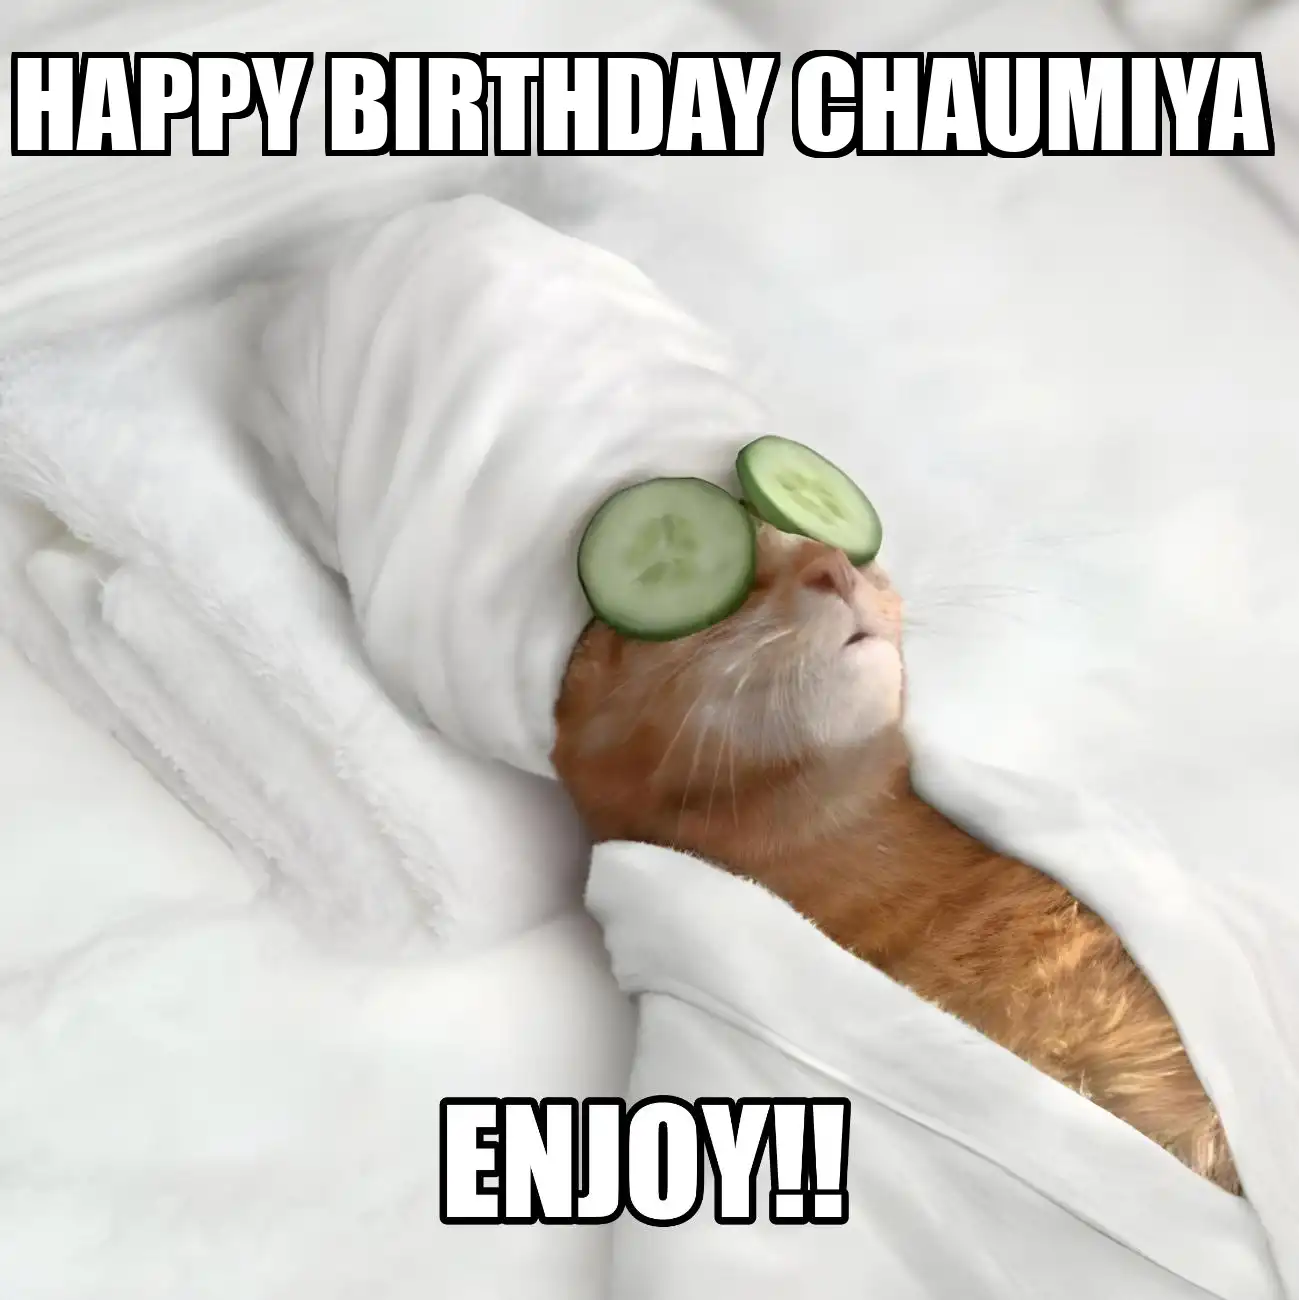 Happy Birthday Chaumiya Enjoy Cat Meme